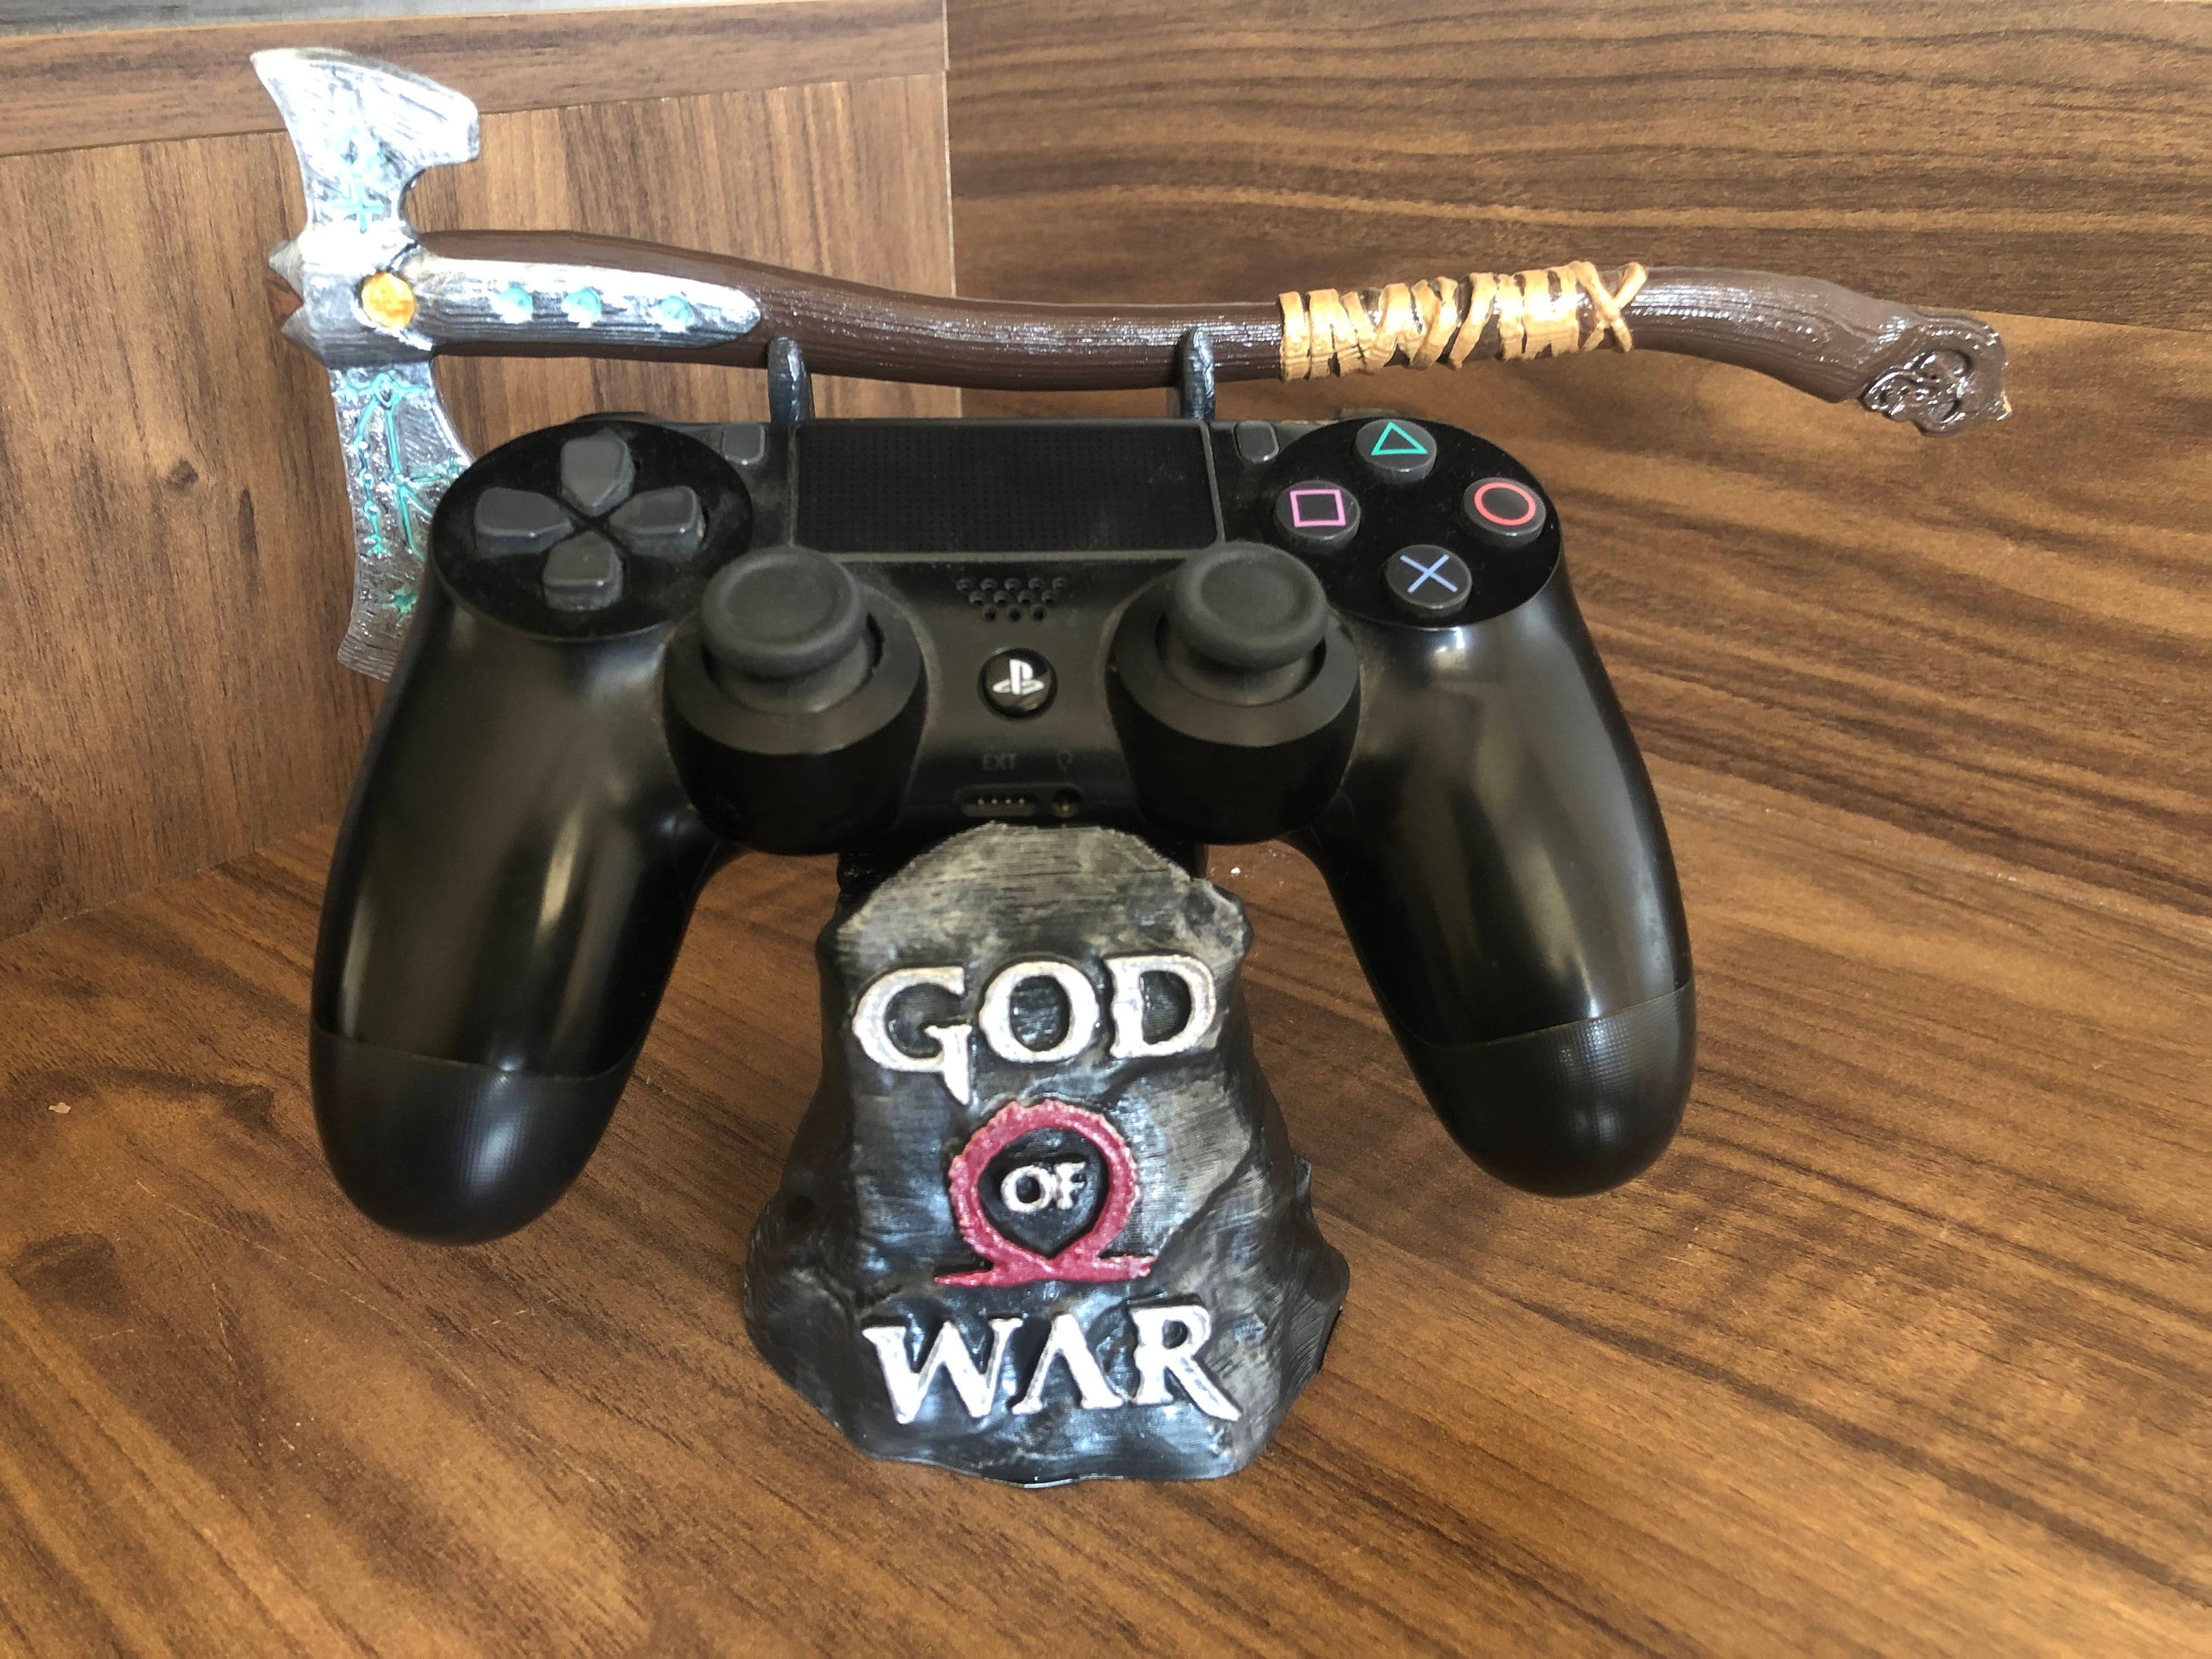 God of War Controller Holder 